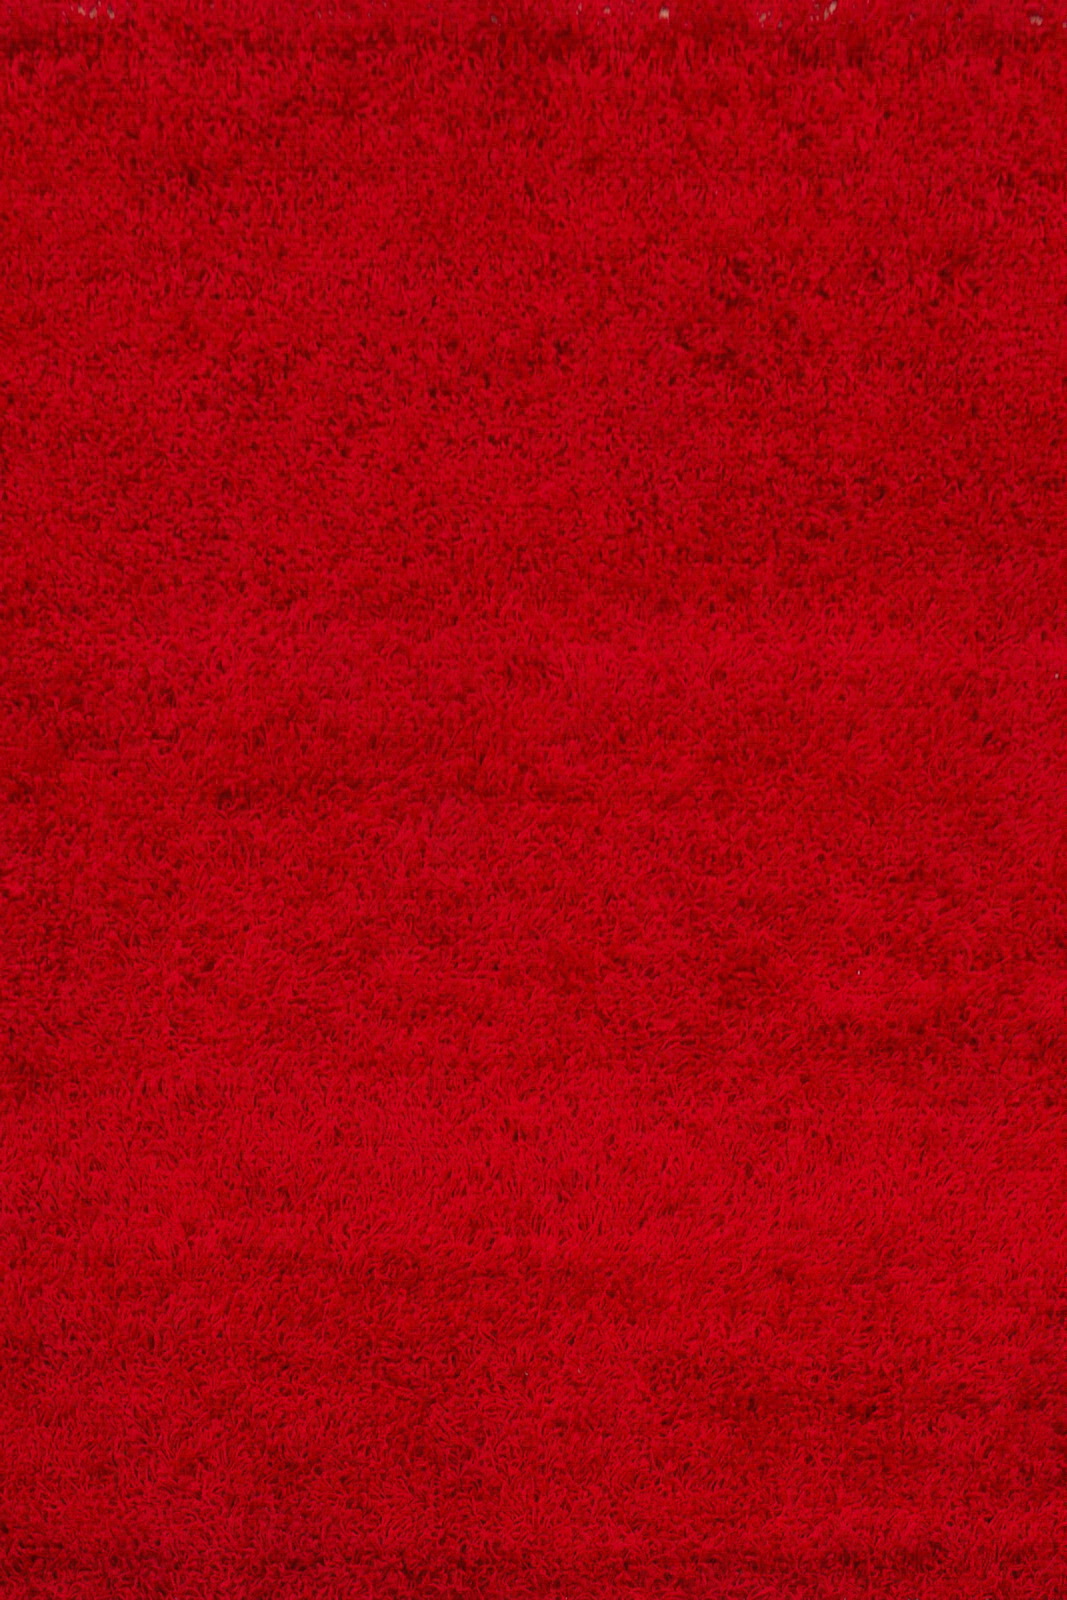 COVOARE - COVOR RELAX 120*170 150 RED, comenziperpetuum.ro